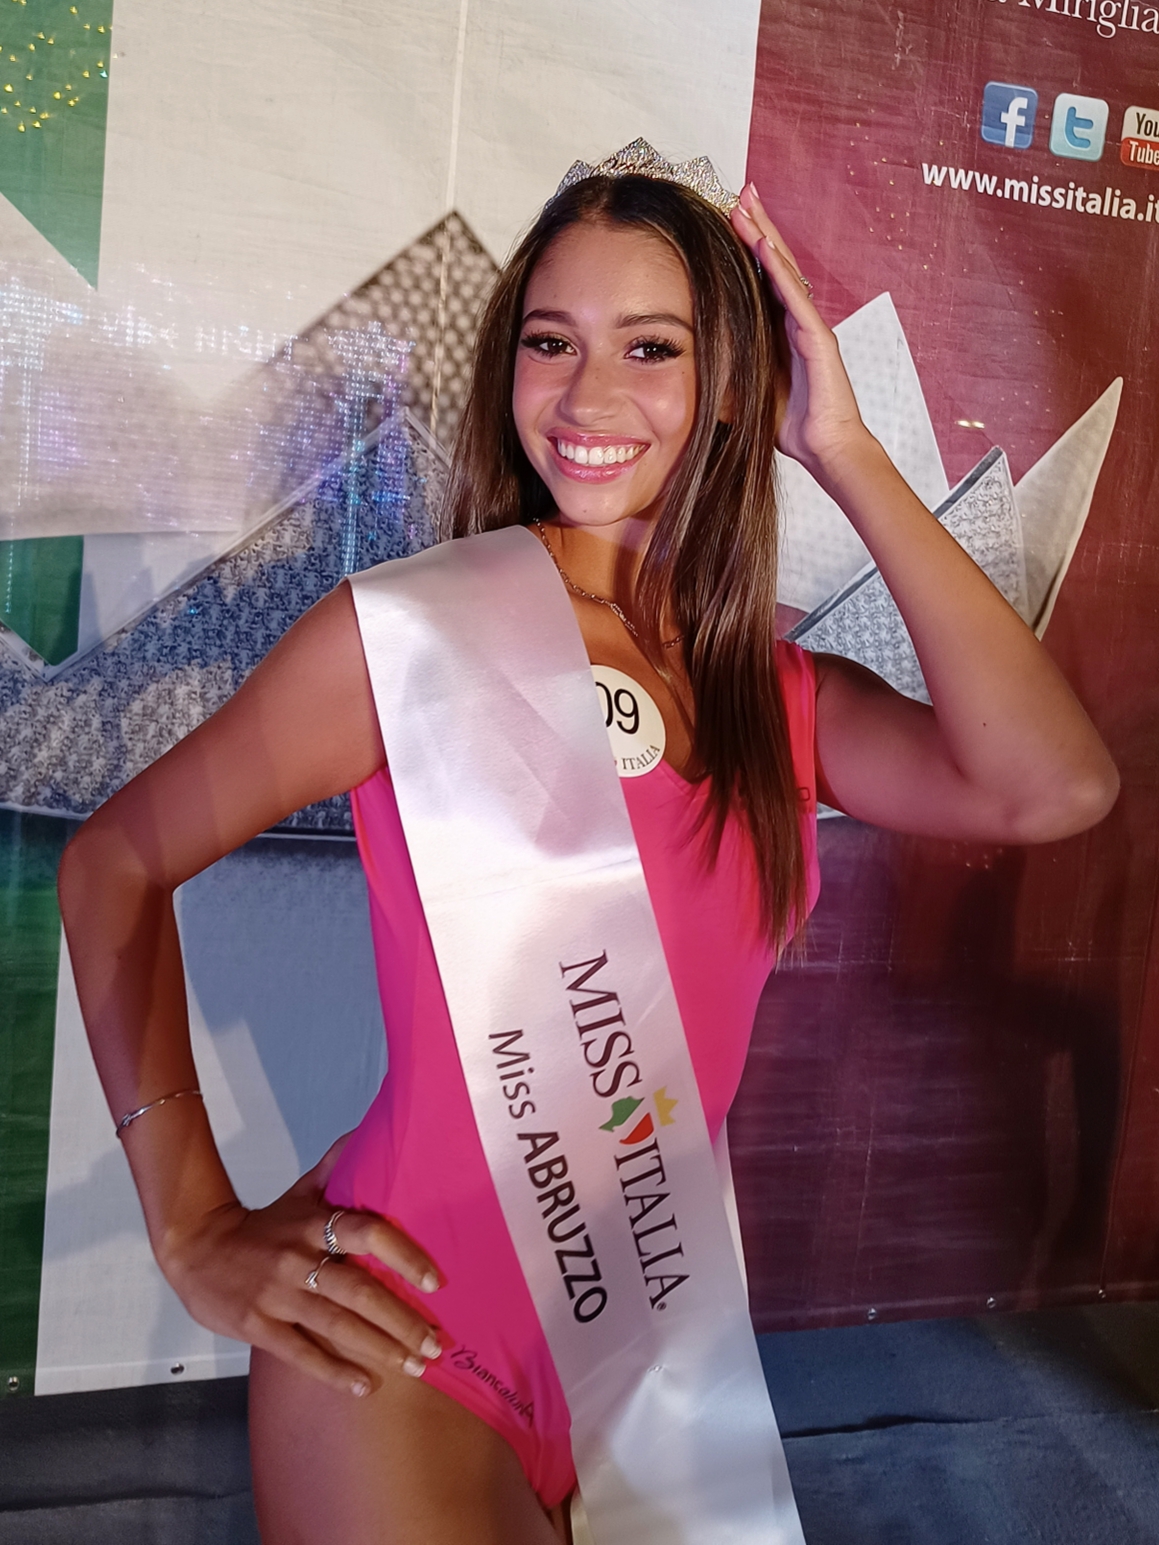 La vincitrice del titolo regionale di Miss Abruzzo è Paola Finocchio, ventenne di San Vito Chietino (CH).